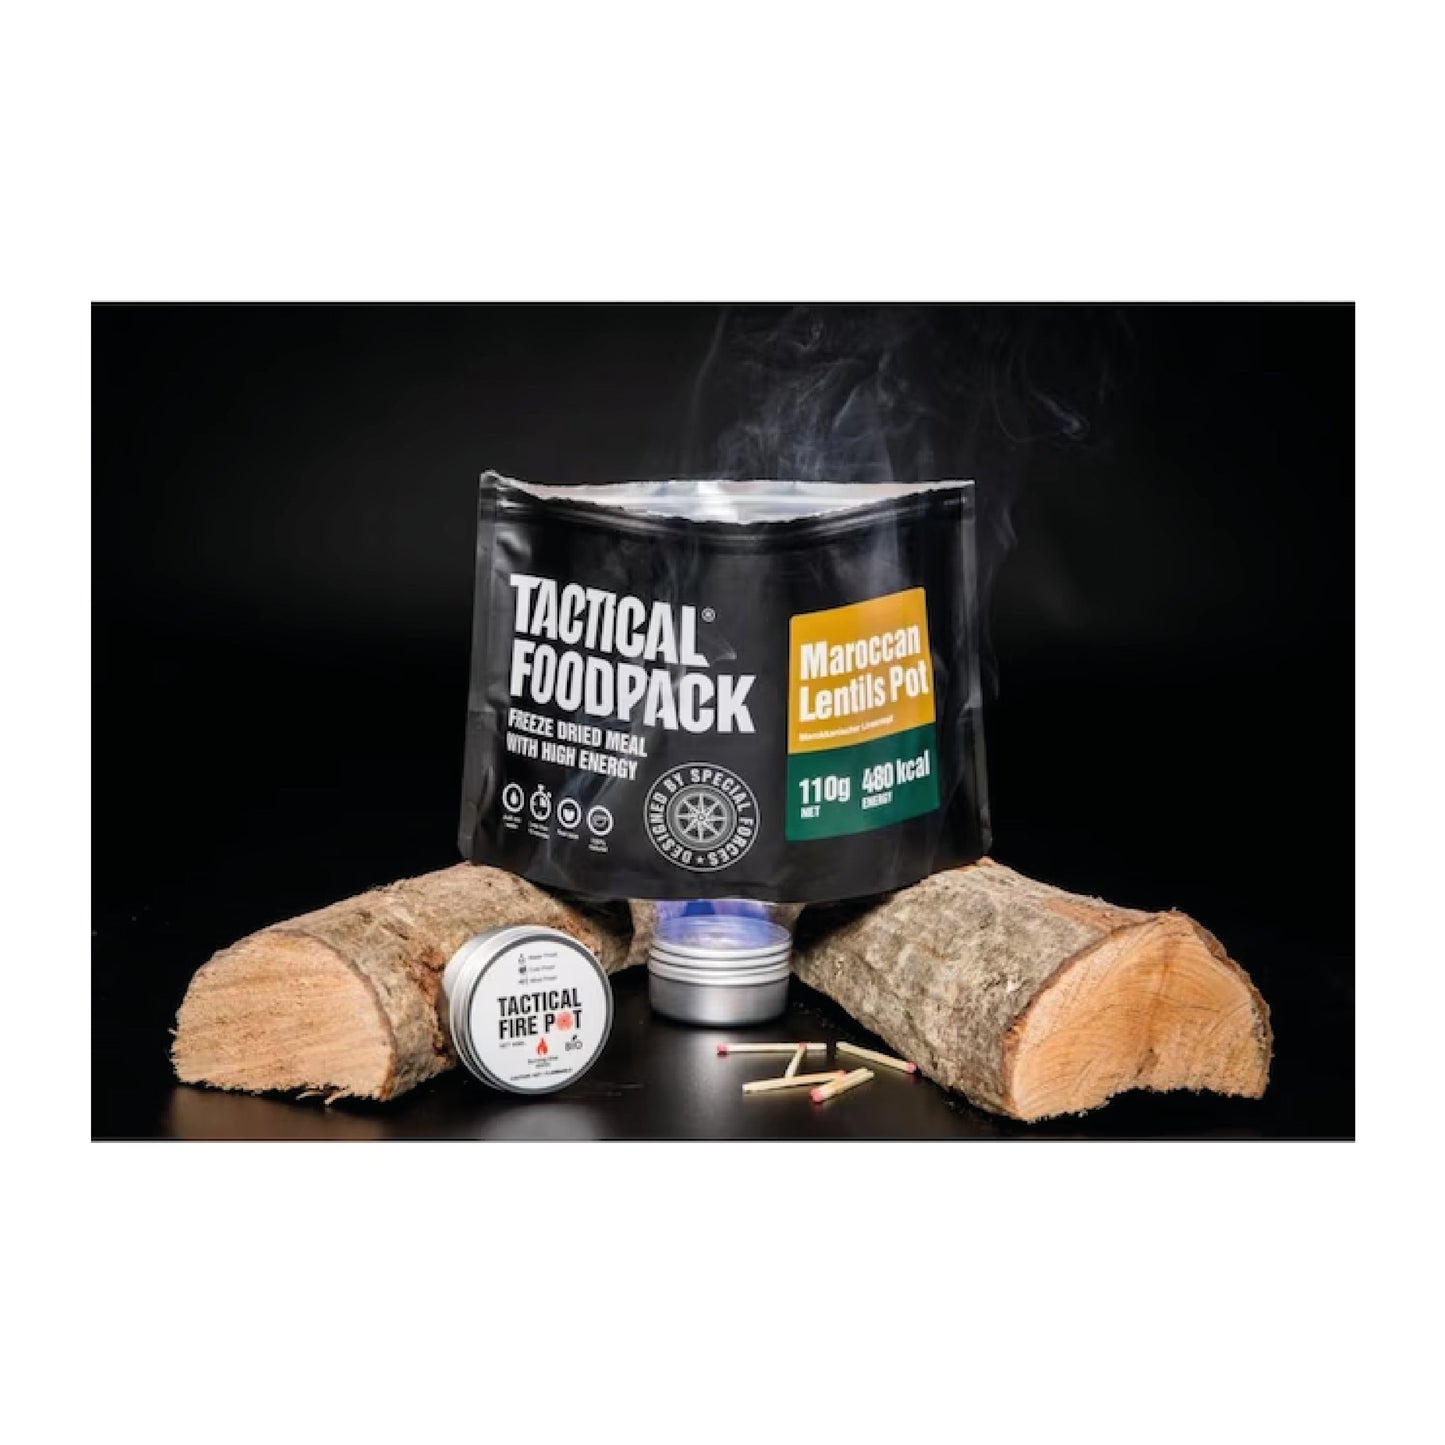 TACTICAL FOODPACK® Fire Pot